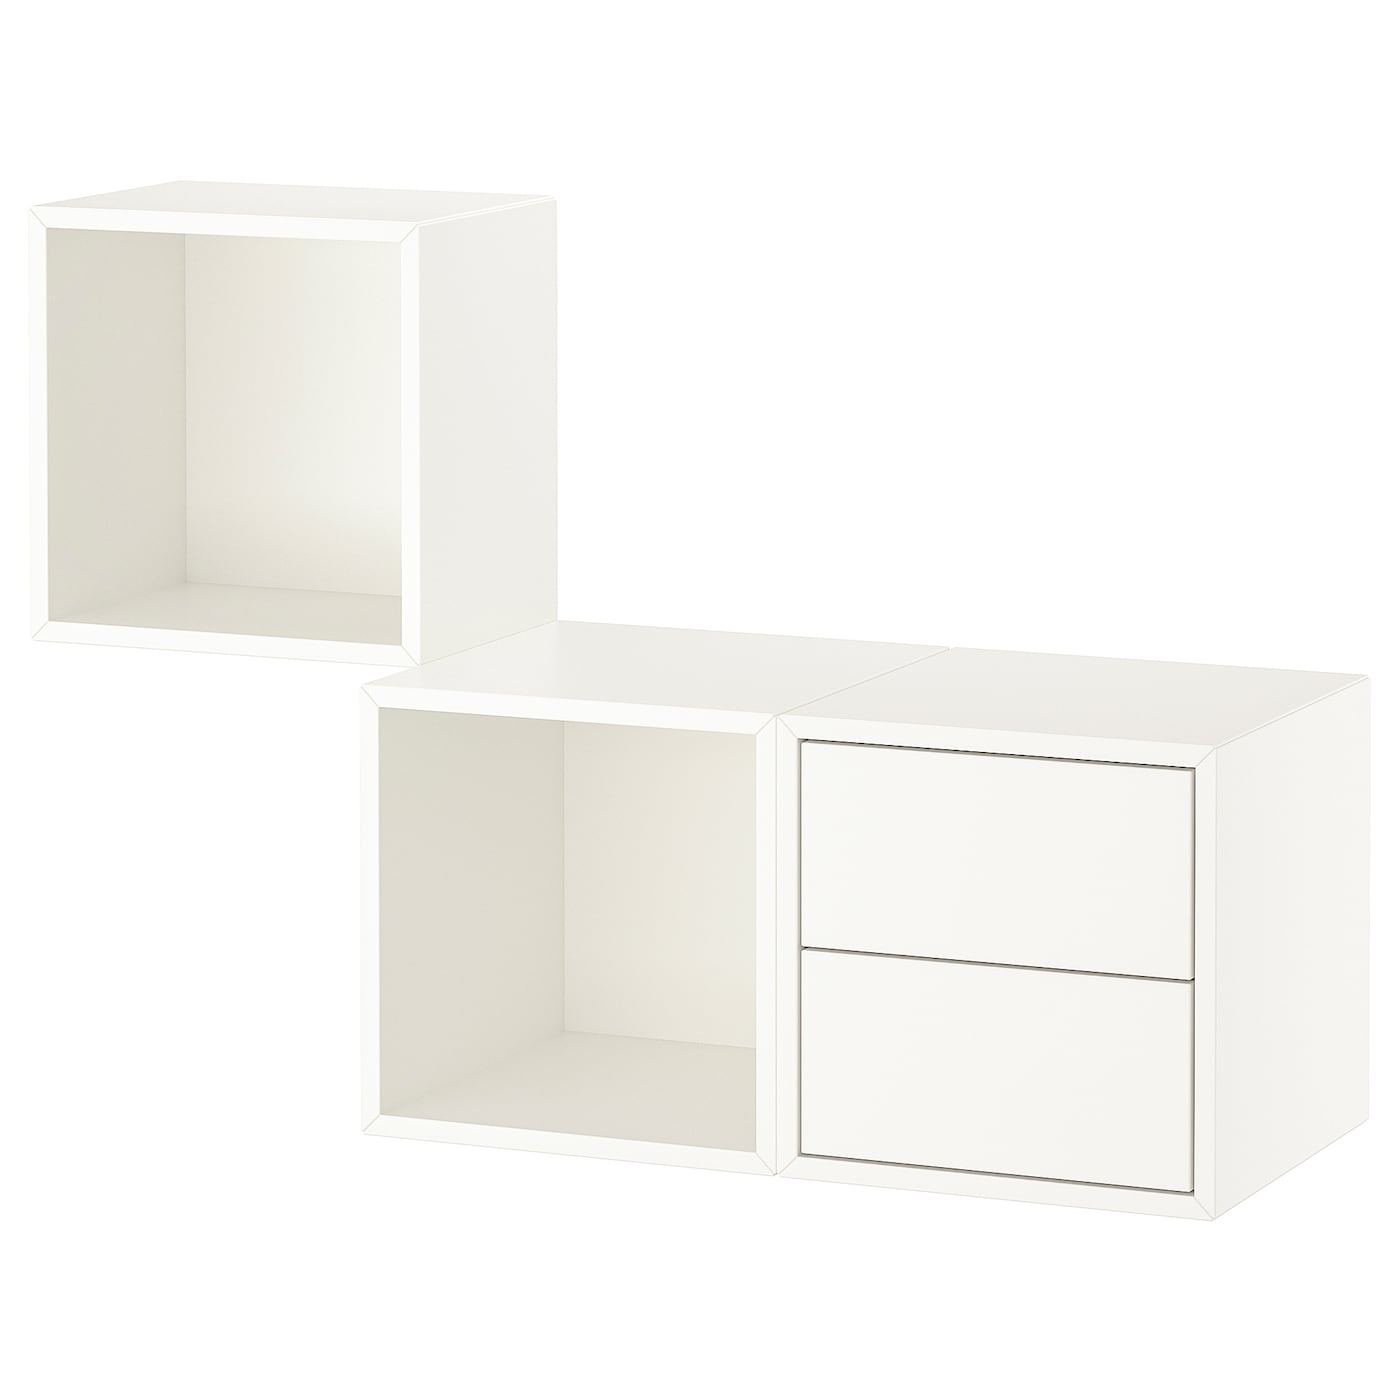 Комбинация навесных шкафов - IKEA EKET, 105x35x70 см, белый, ЭКЕТ ИКЕА